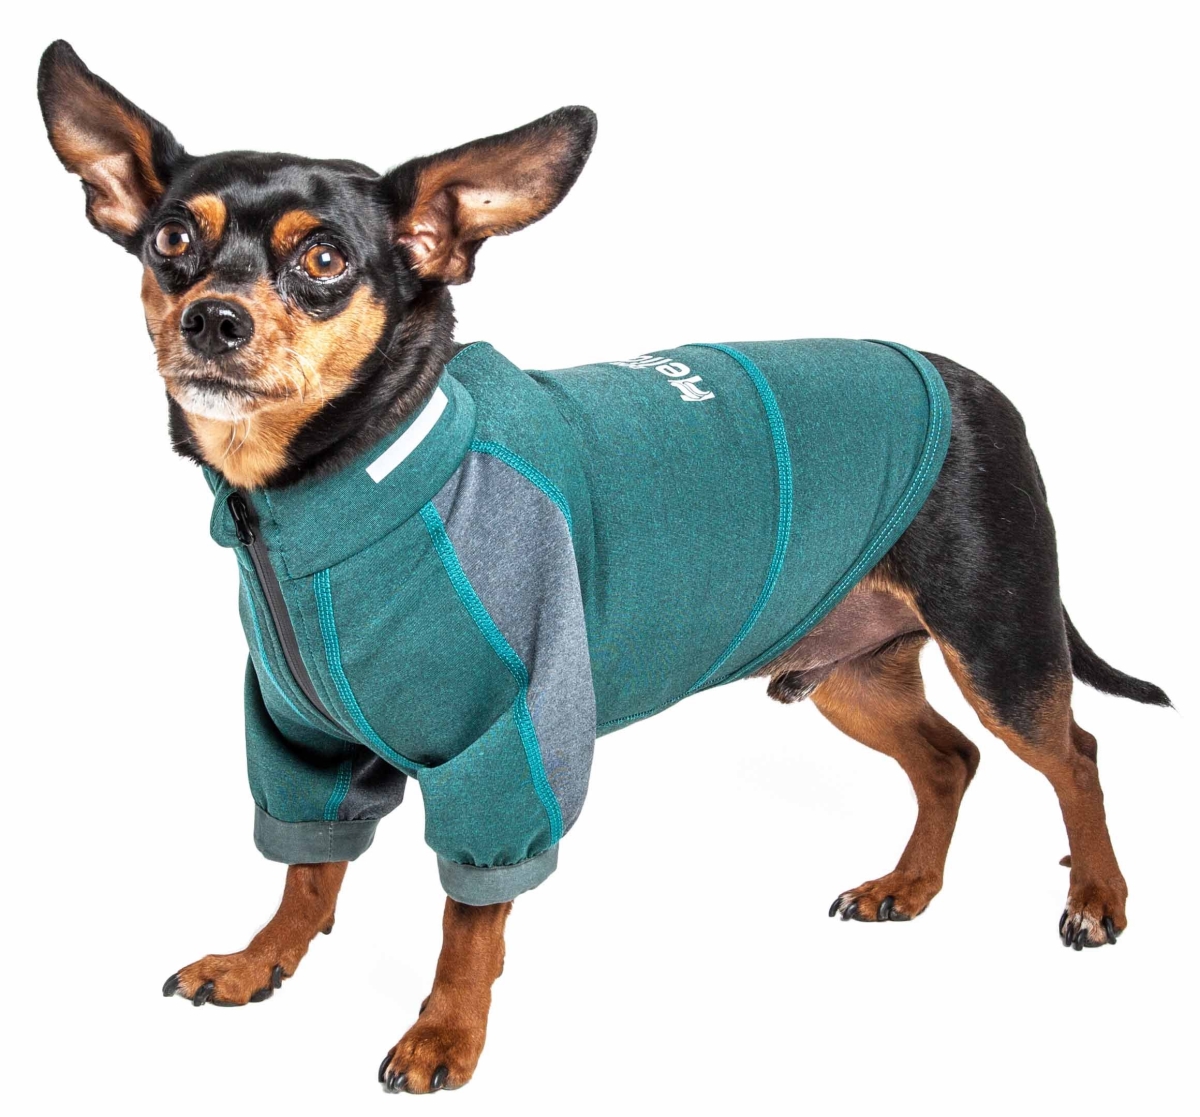 Tshl6gnsm Eboneflow Mediumweight 4-way-stretch Flexible & Breathable Performance Dog Yoga T-shirt, Forest Green & Grey - Small